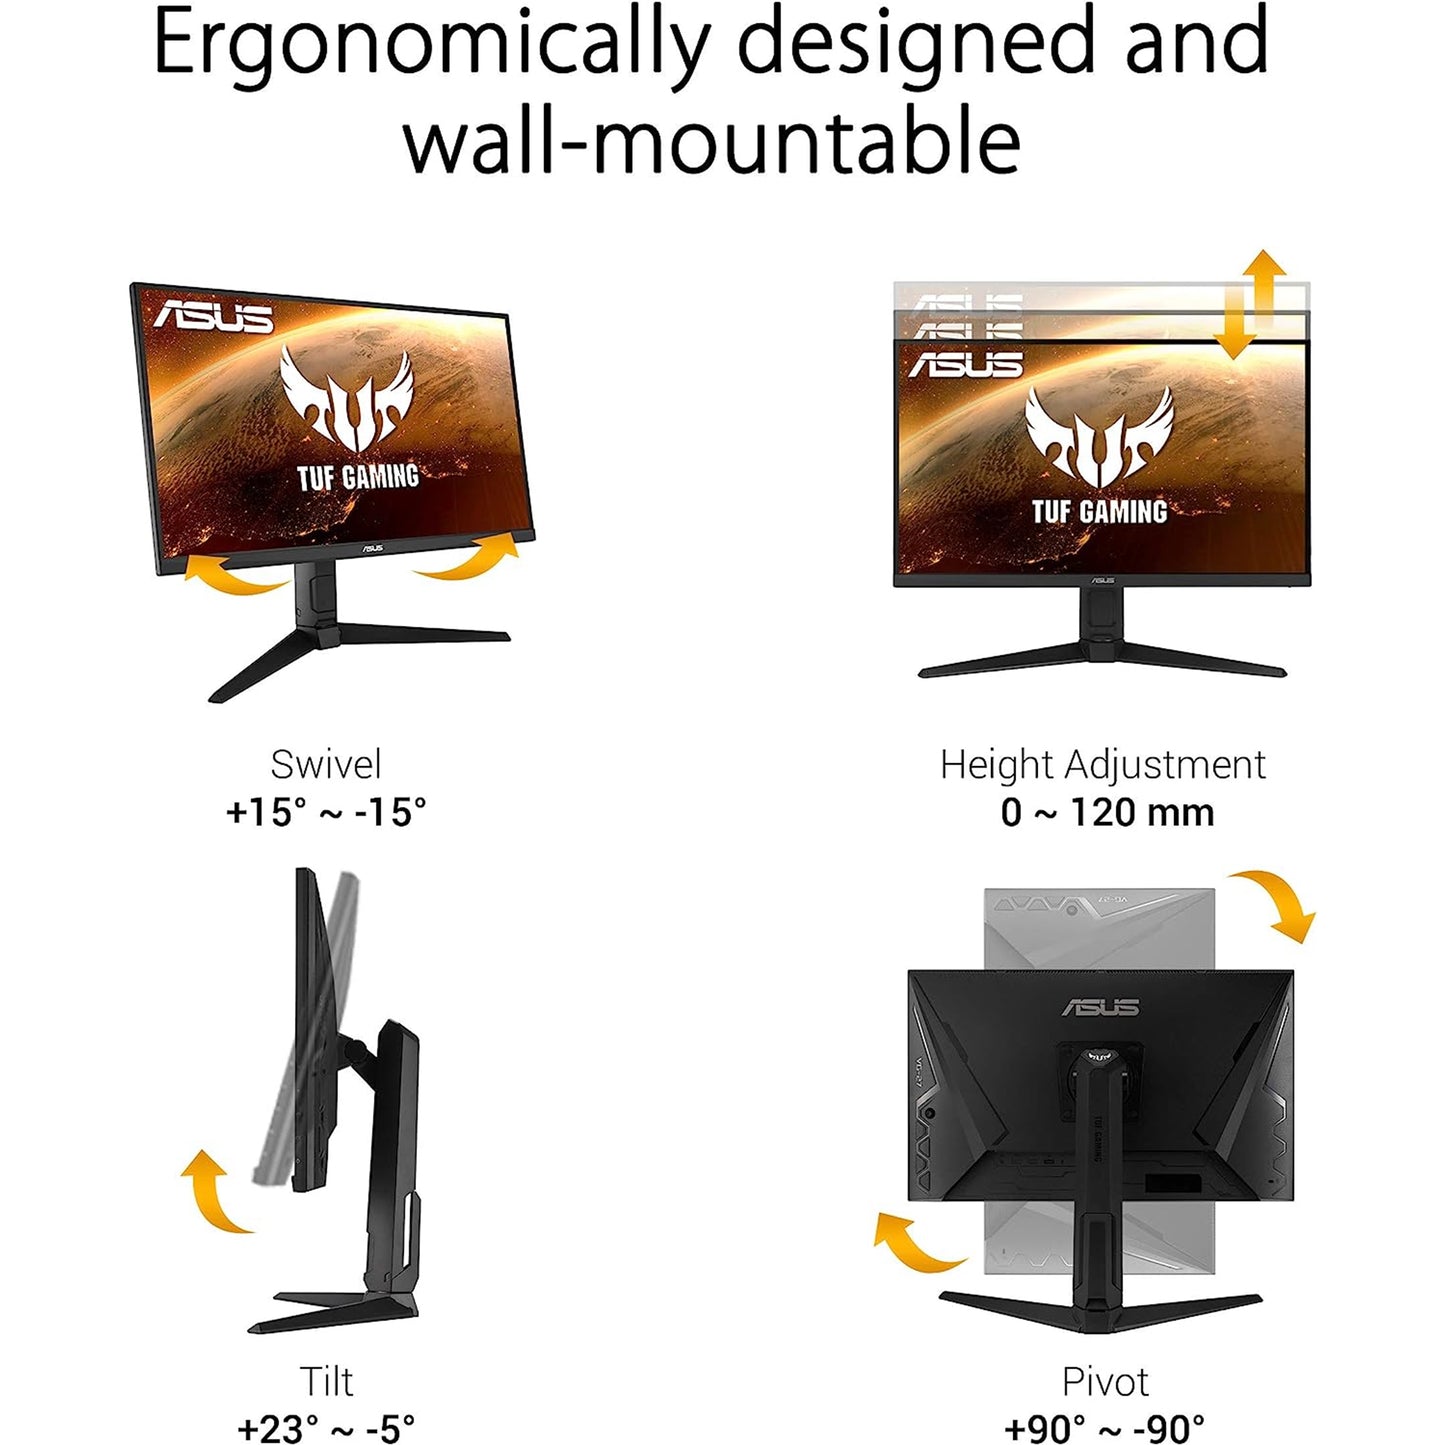 شاشة الألعاب ASUS TUF Gaming VG279QL1A مقاس 27 بوصة بتقنية HDR، بدقة 1080P Full HD، و165 هرتز (يدعم 144 هرتز)، وIPS، و1 مللي ثانية، وFreeSync Premium، وDisplayHDR 400، وطمس الحركة المنخفض للغاية، والعناية بالعين، ومنفذ HDMI DisplayPort، أسود 